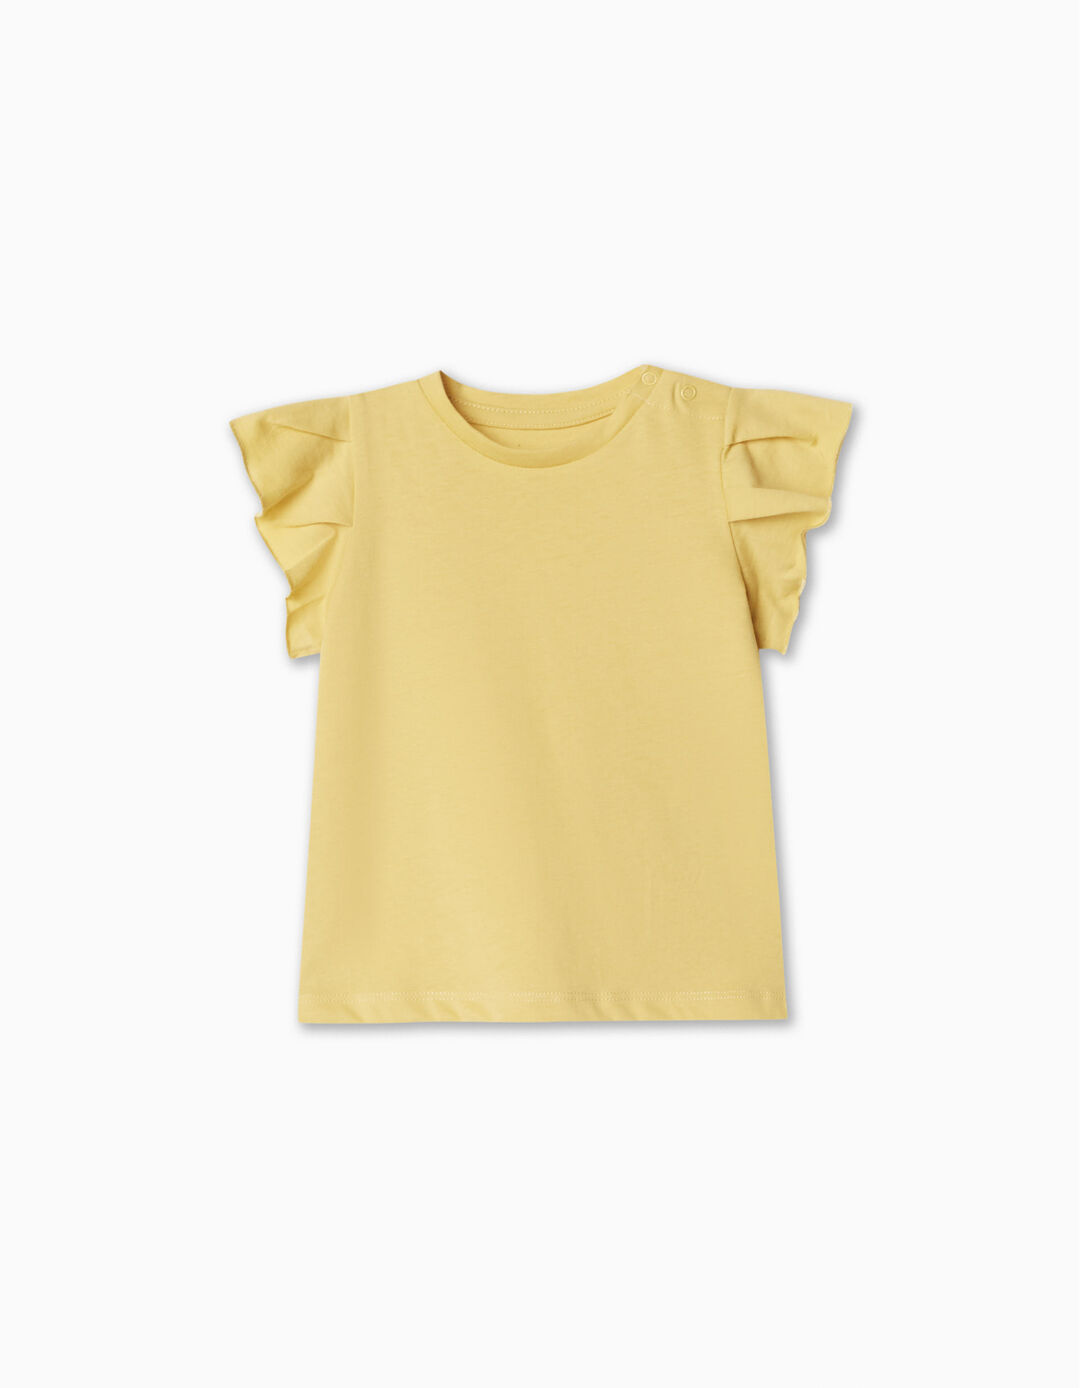 Ruffled T-shirt, Baby Girl, Light Yellow